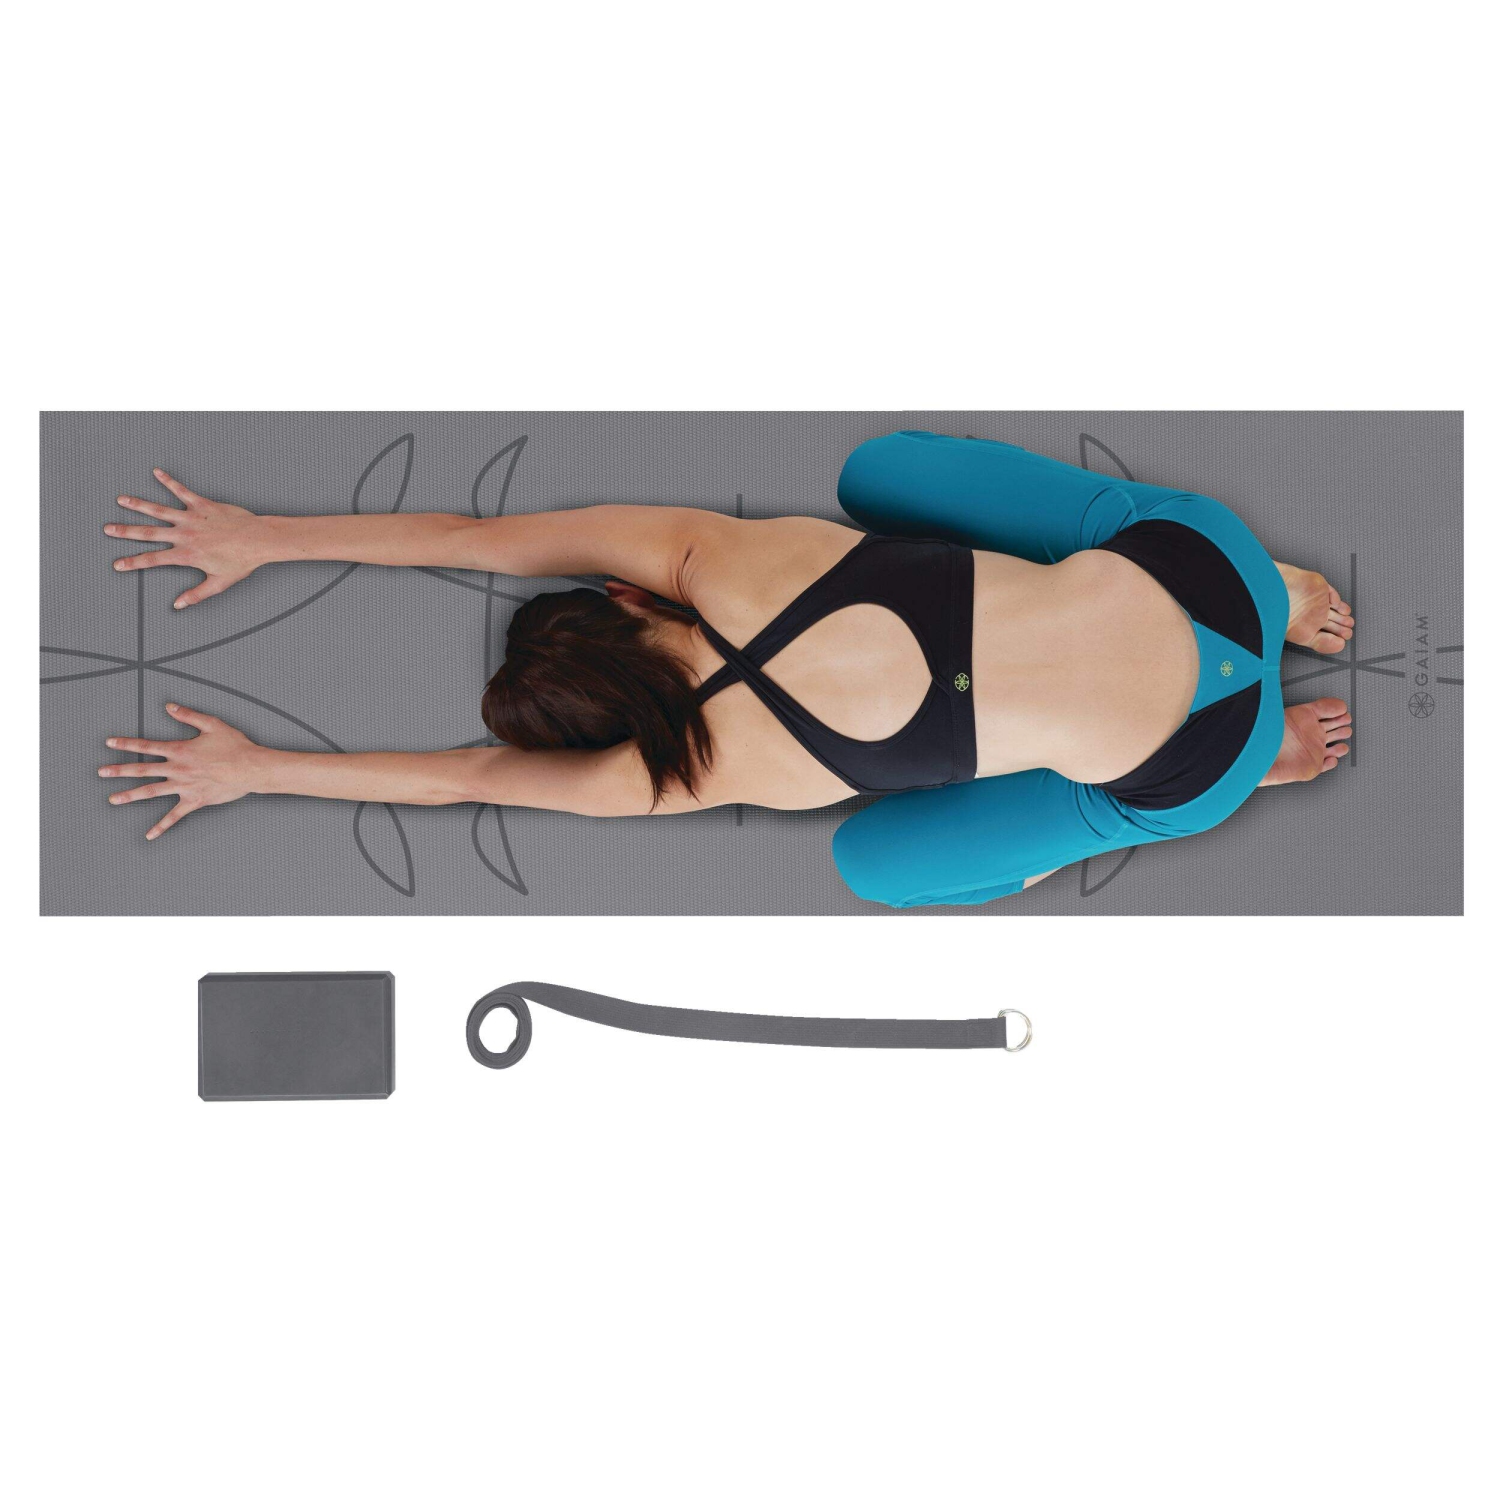  Gaiam Beginner's Yoga Starter Kit Set (Yoga Mat, Yoga